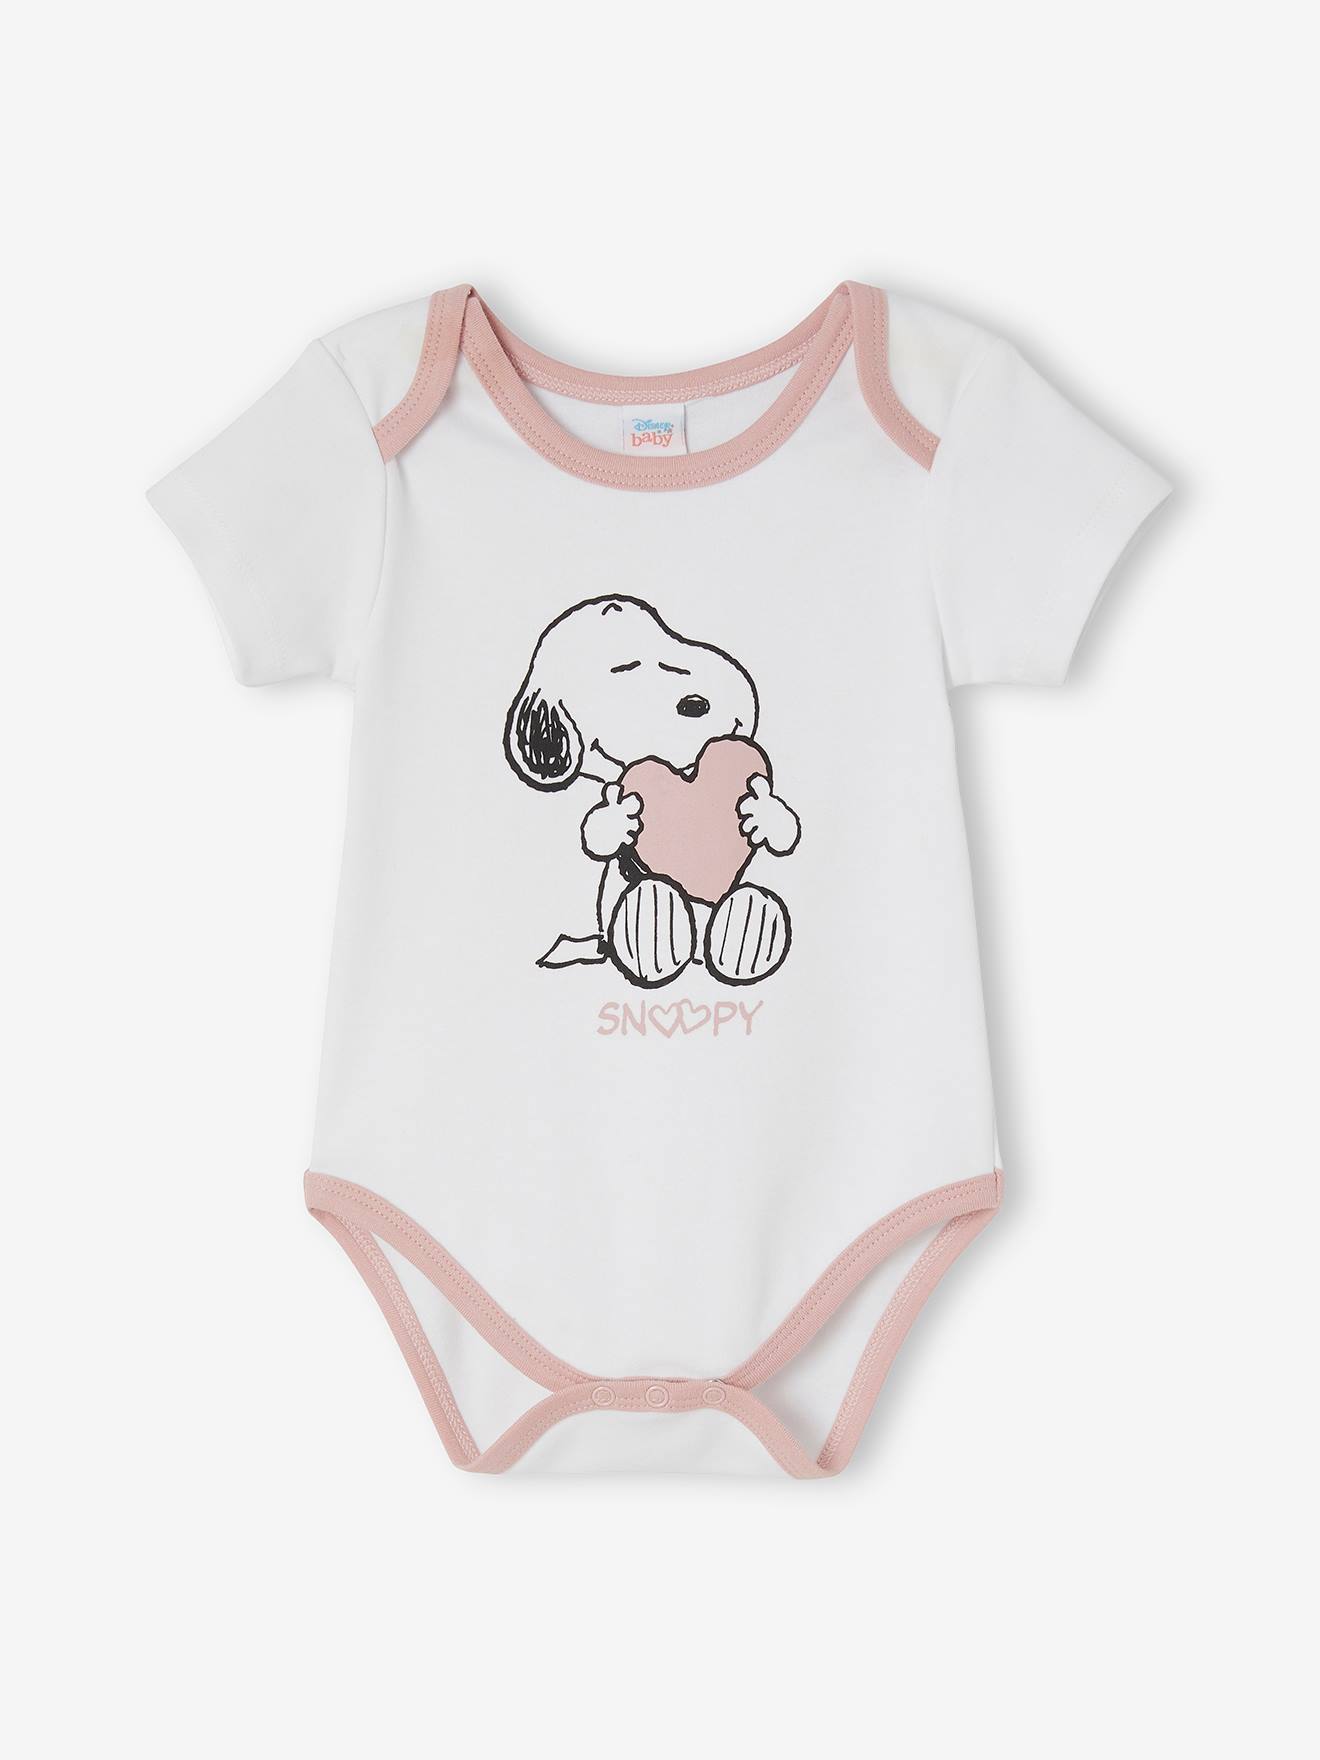 Lot de 2 bodies bébé fille Snoopy Peanuts® - lot blanc et rose, Bébé